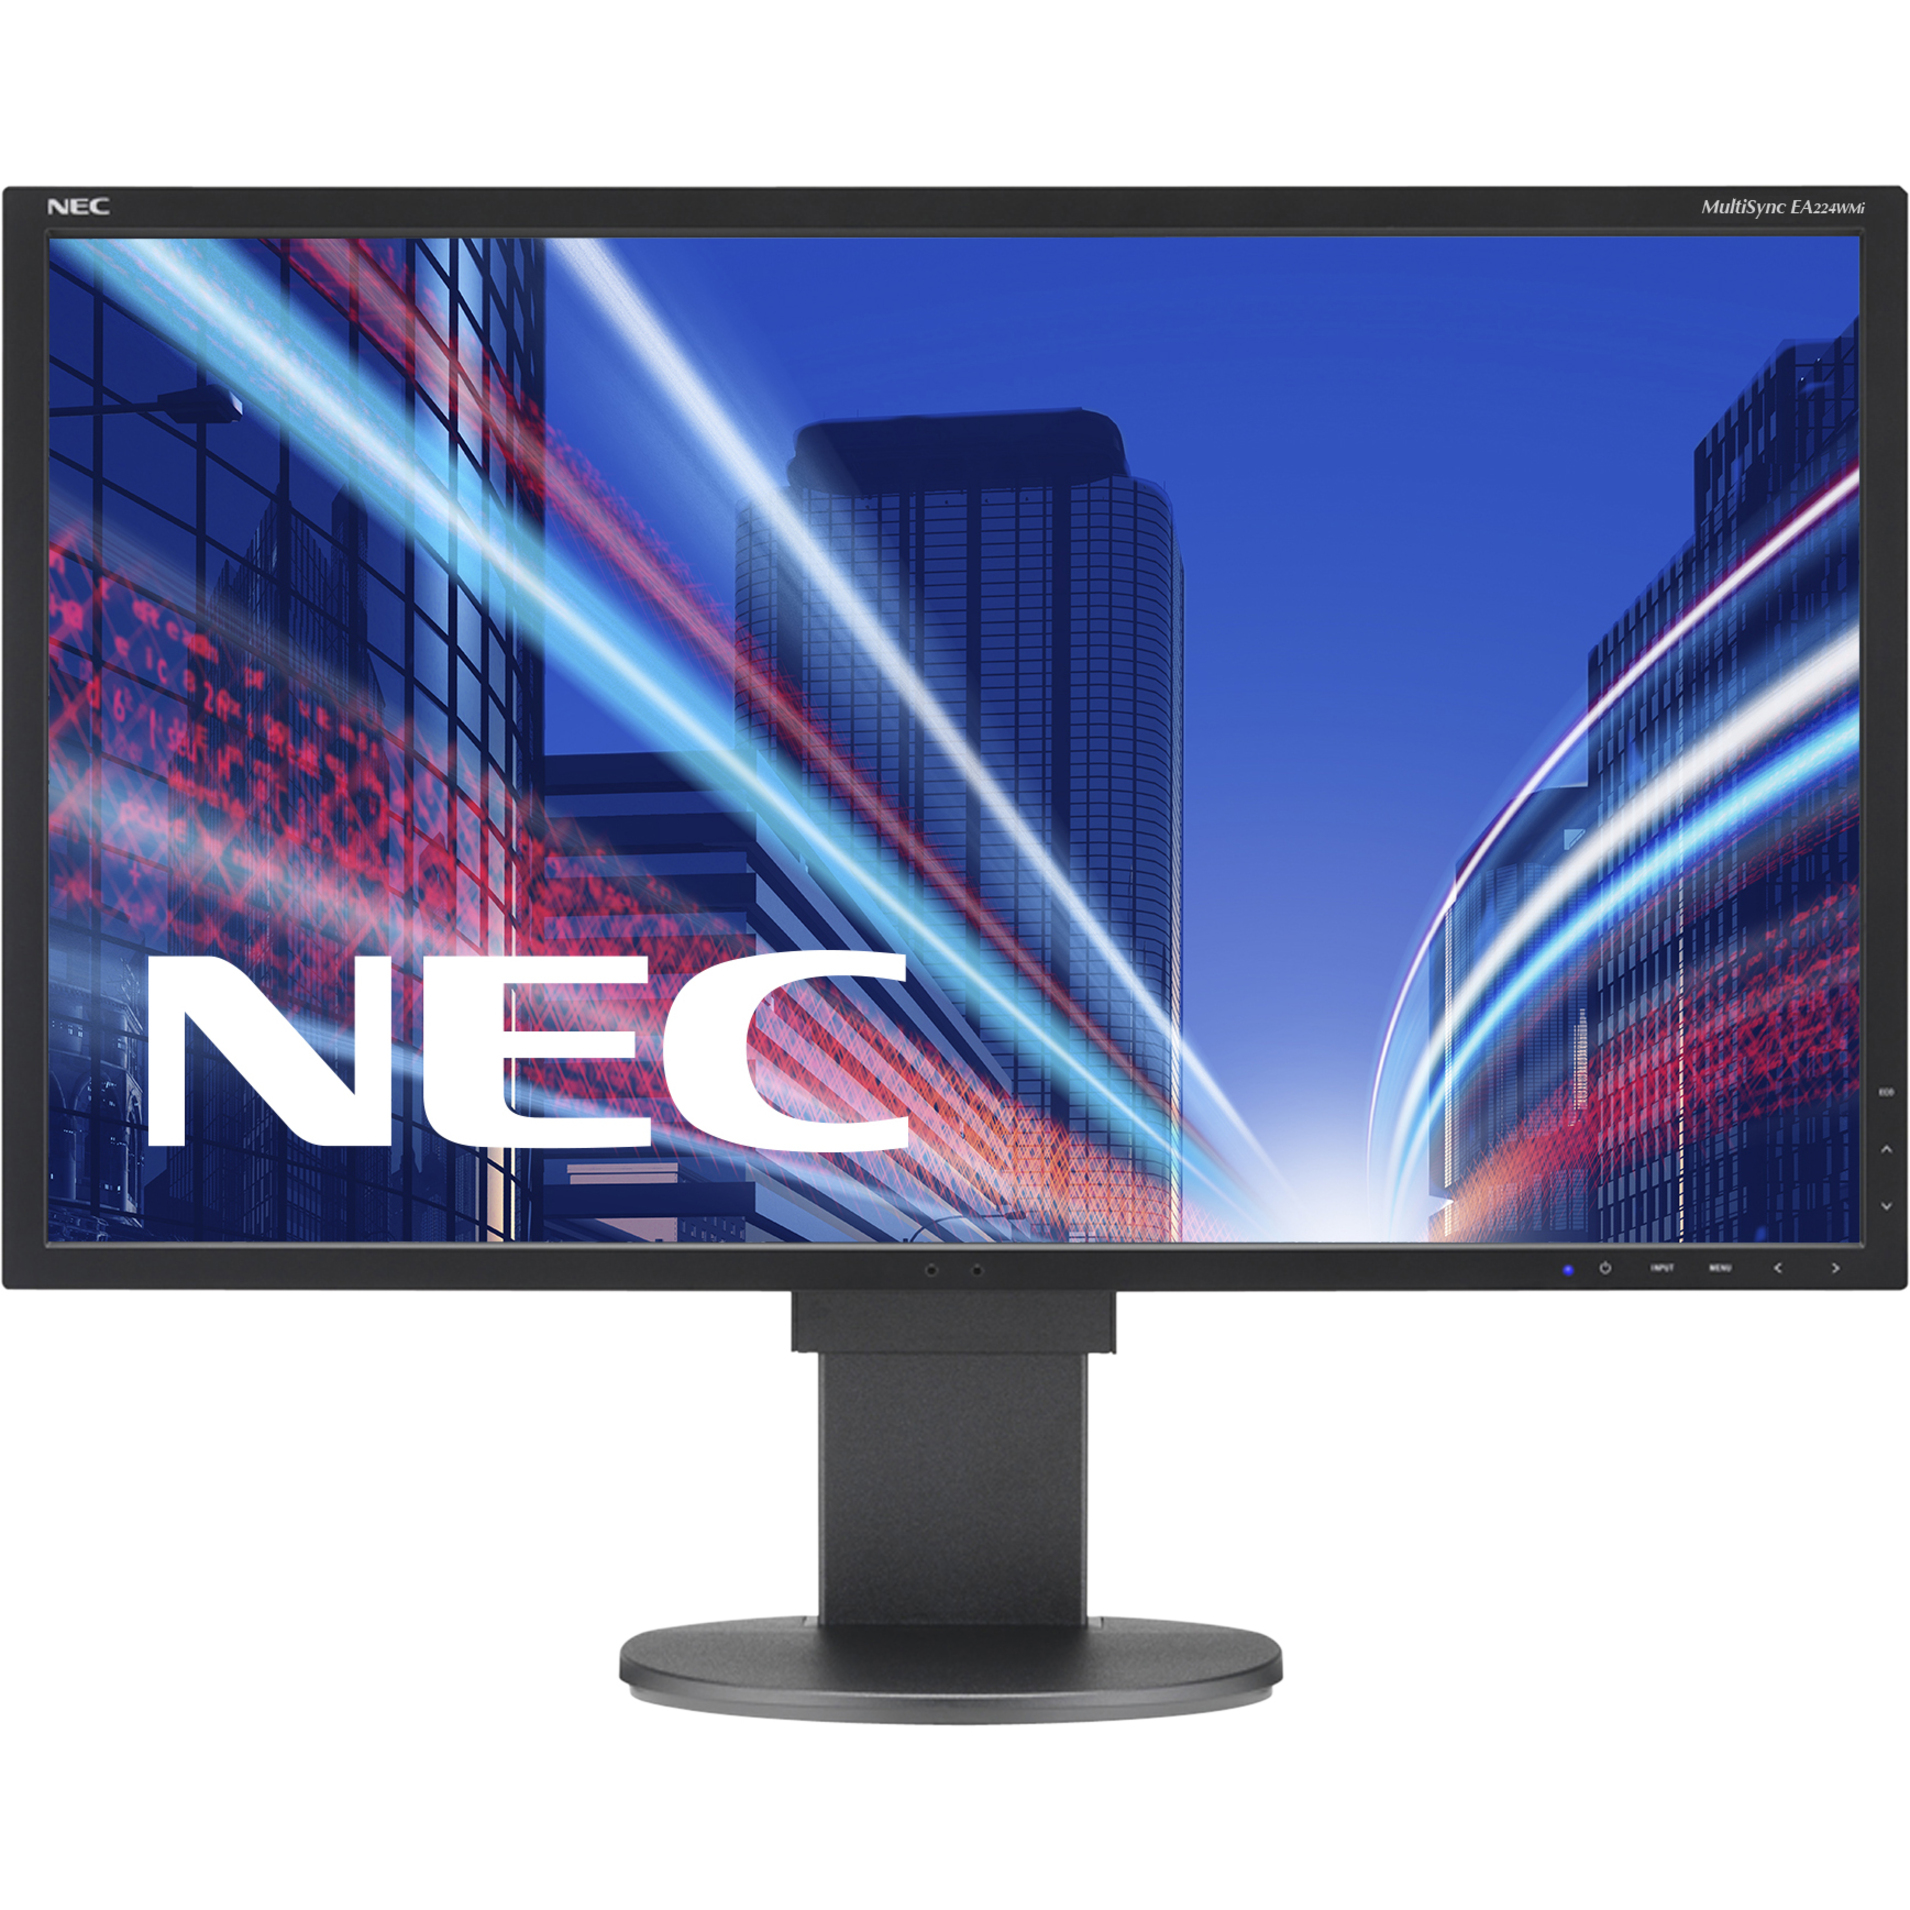 NEC MultiSync EA224WMi-BK - LED monitor - 22" - image 4 of 5